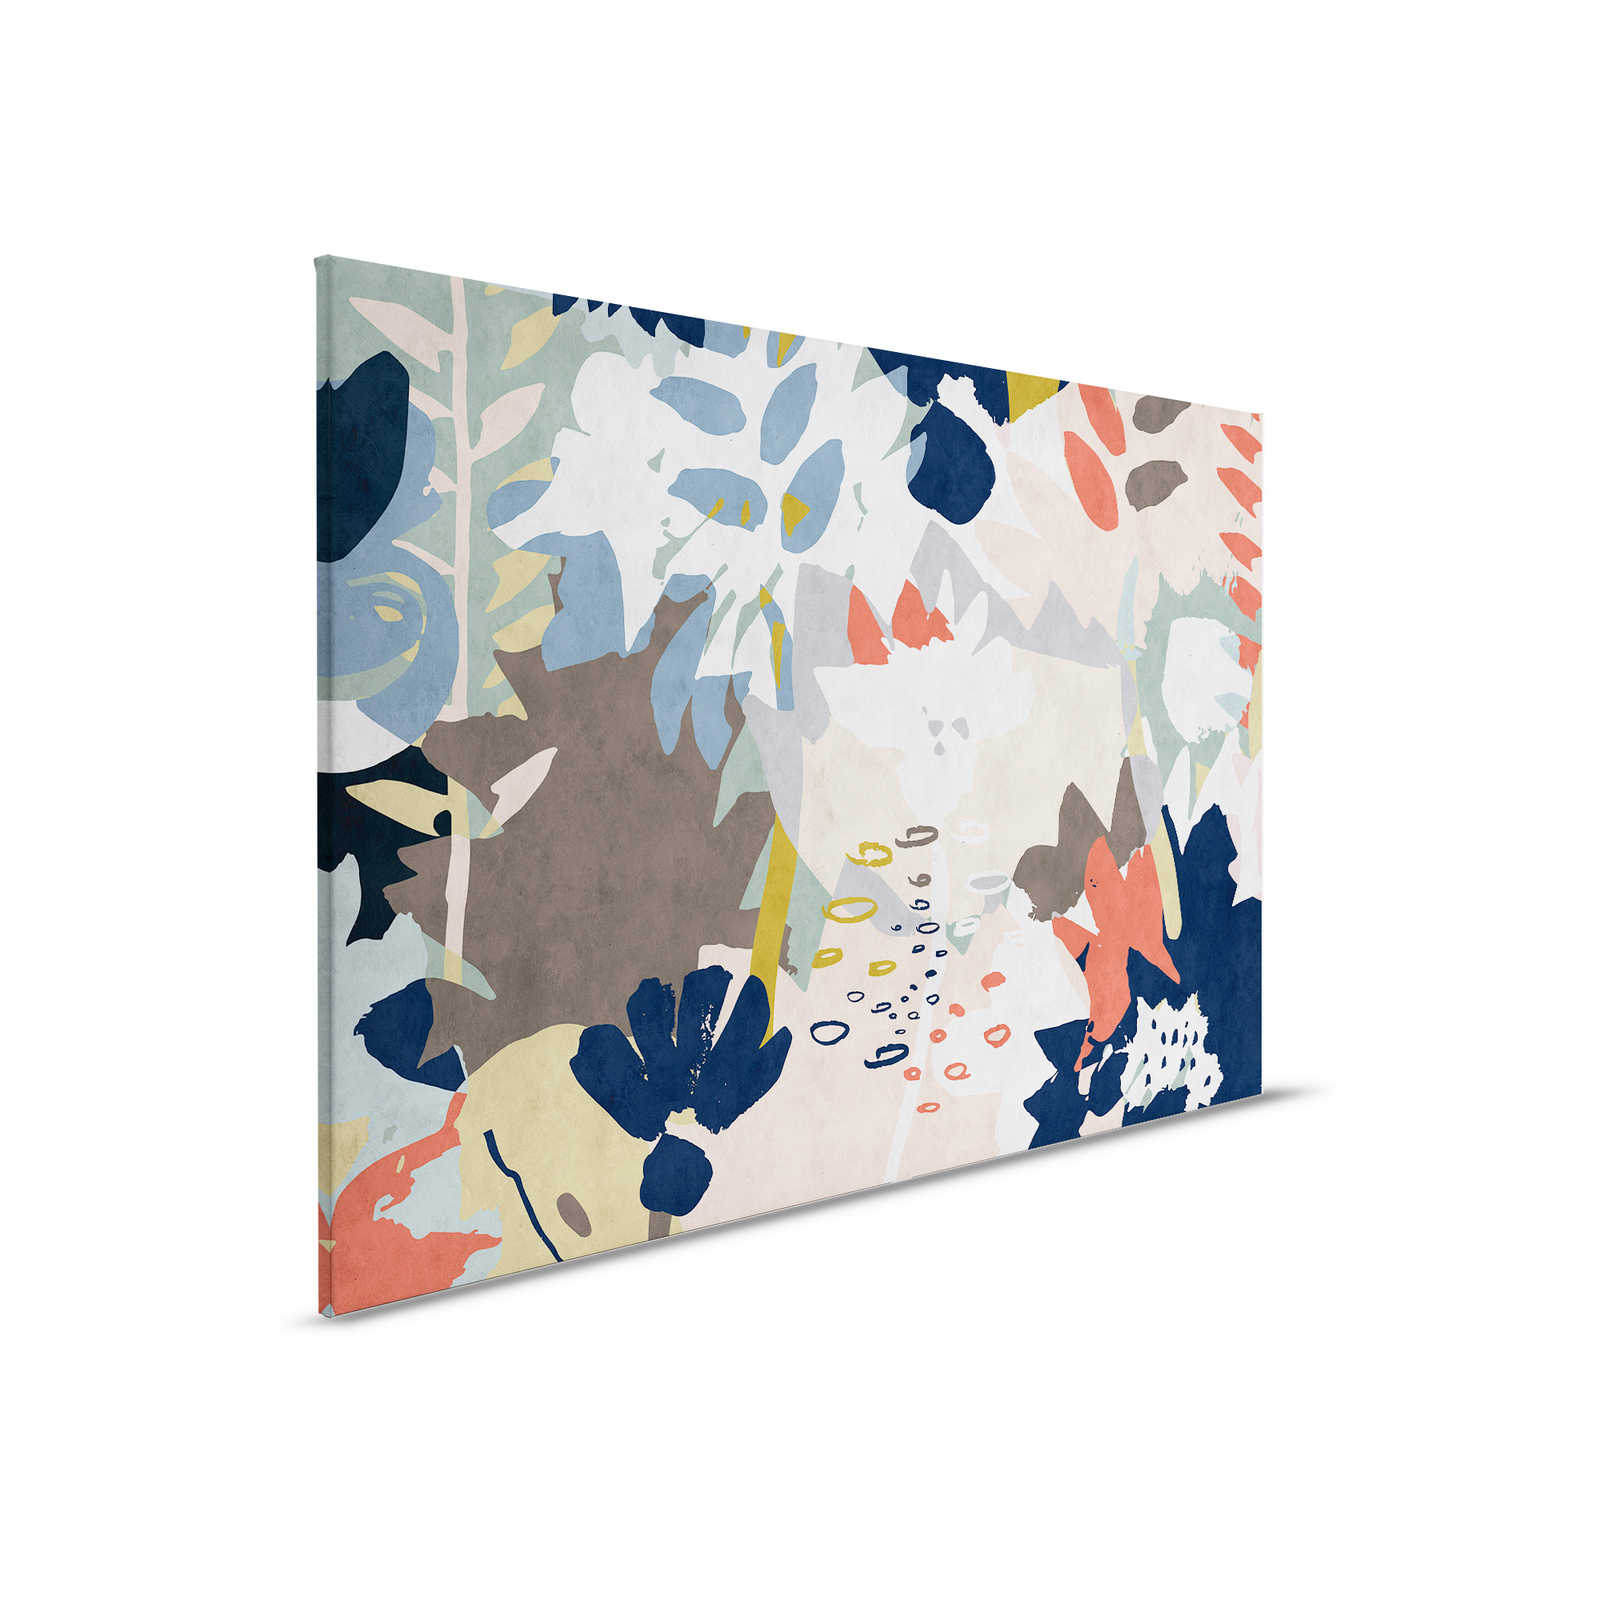         Floral Collage 4 - Leinwandbild mit buntem Blattmotiv - Löschpapier Struktur – 0,90 m x 0,60 m
    